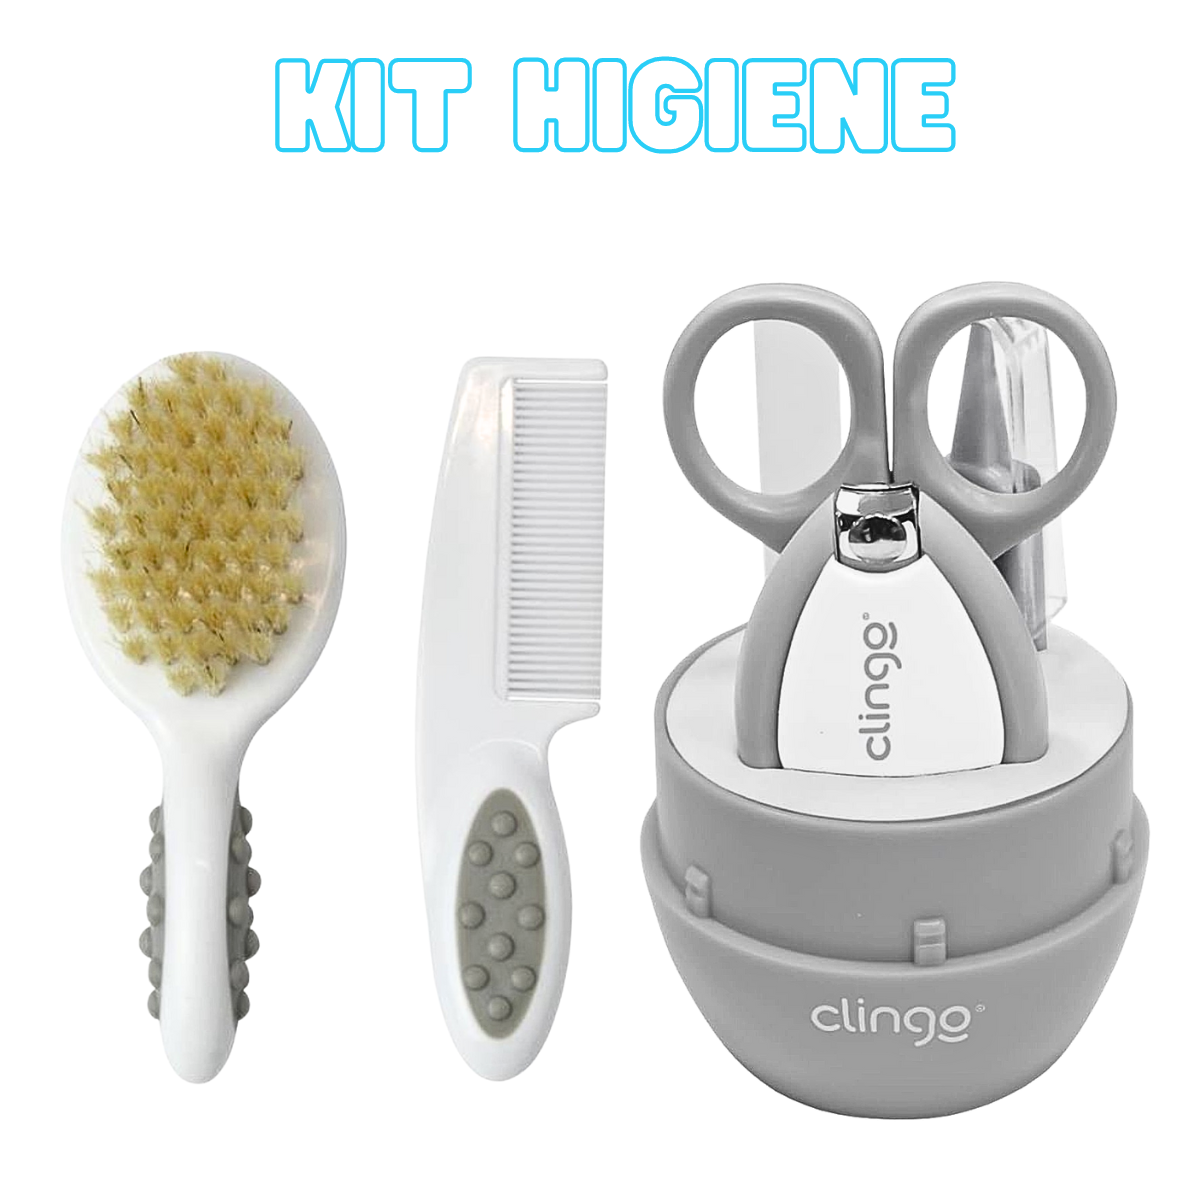 Kit de Higiene Bebe Escova Pente Cortador Unha Recém Nascido Clingo 7 Peças - 2